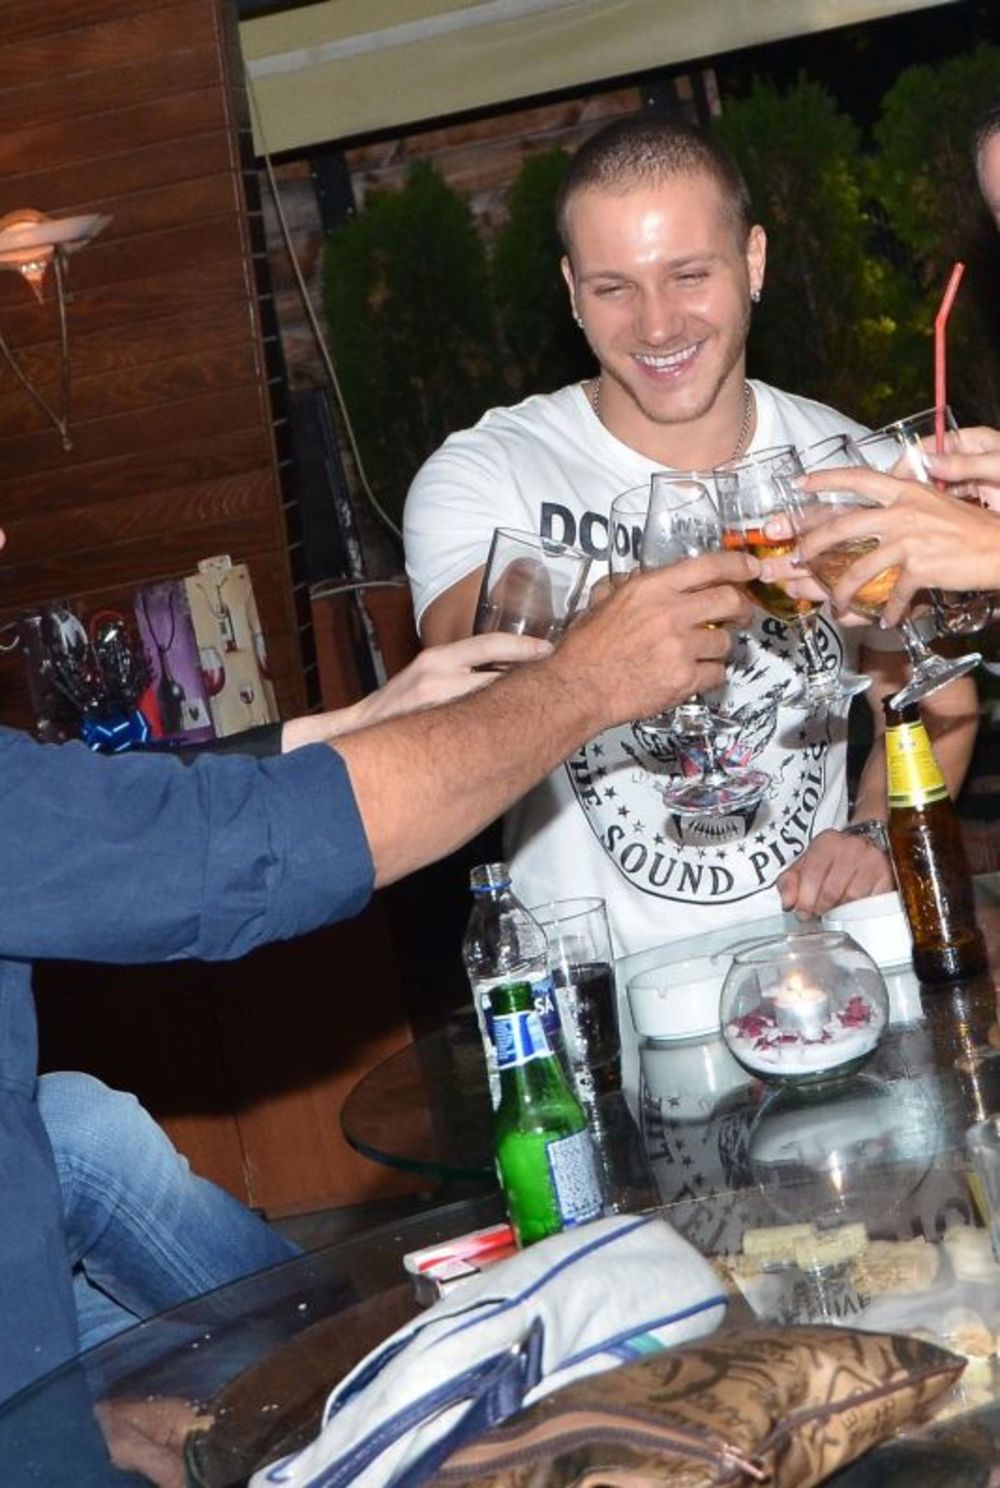 Žurkom u elitnom restoranu Zlatnik Kej na zemunskom keju, pop pevač Saša Kovačević proslavio je 27. rođendan u društvu najboljih prijatelja, porodice i uz tamburaše. Uz piće i večeru, zaslužni građanin Zemuna je slavio, a njegovi drugari naručivali su pesme za